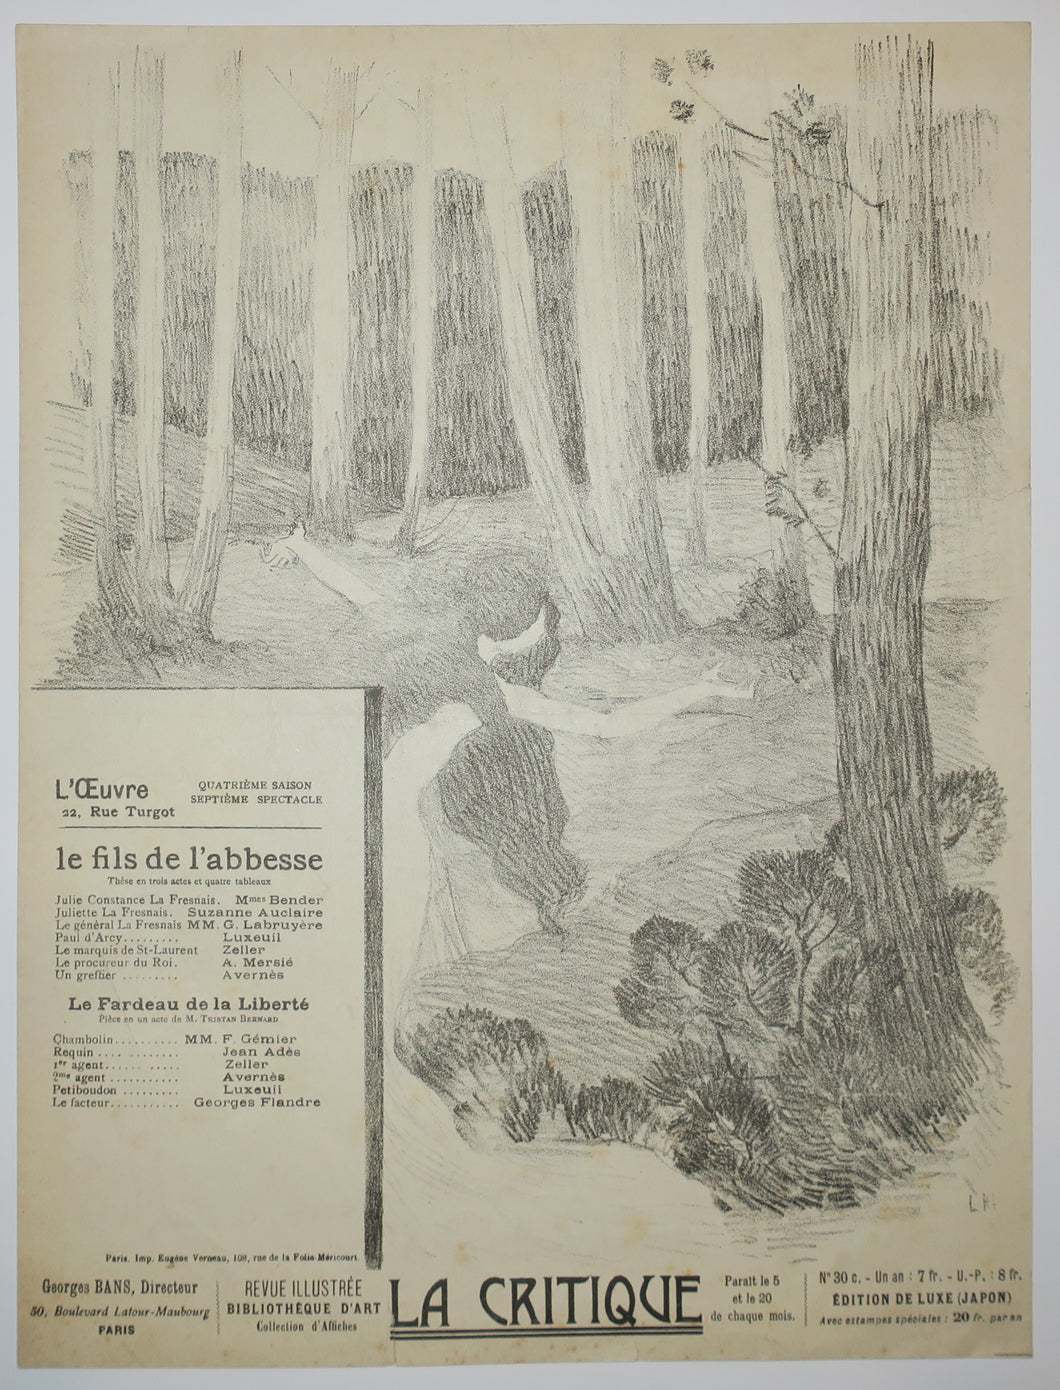 Le fils de l'abbesse par Ambroise Herdey & Le Fardeau de la liberté par Tristan Bernard. Programme pour le Théâtre de l'Oeuvre. 1897.